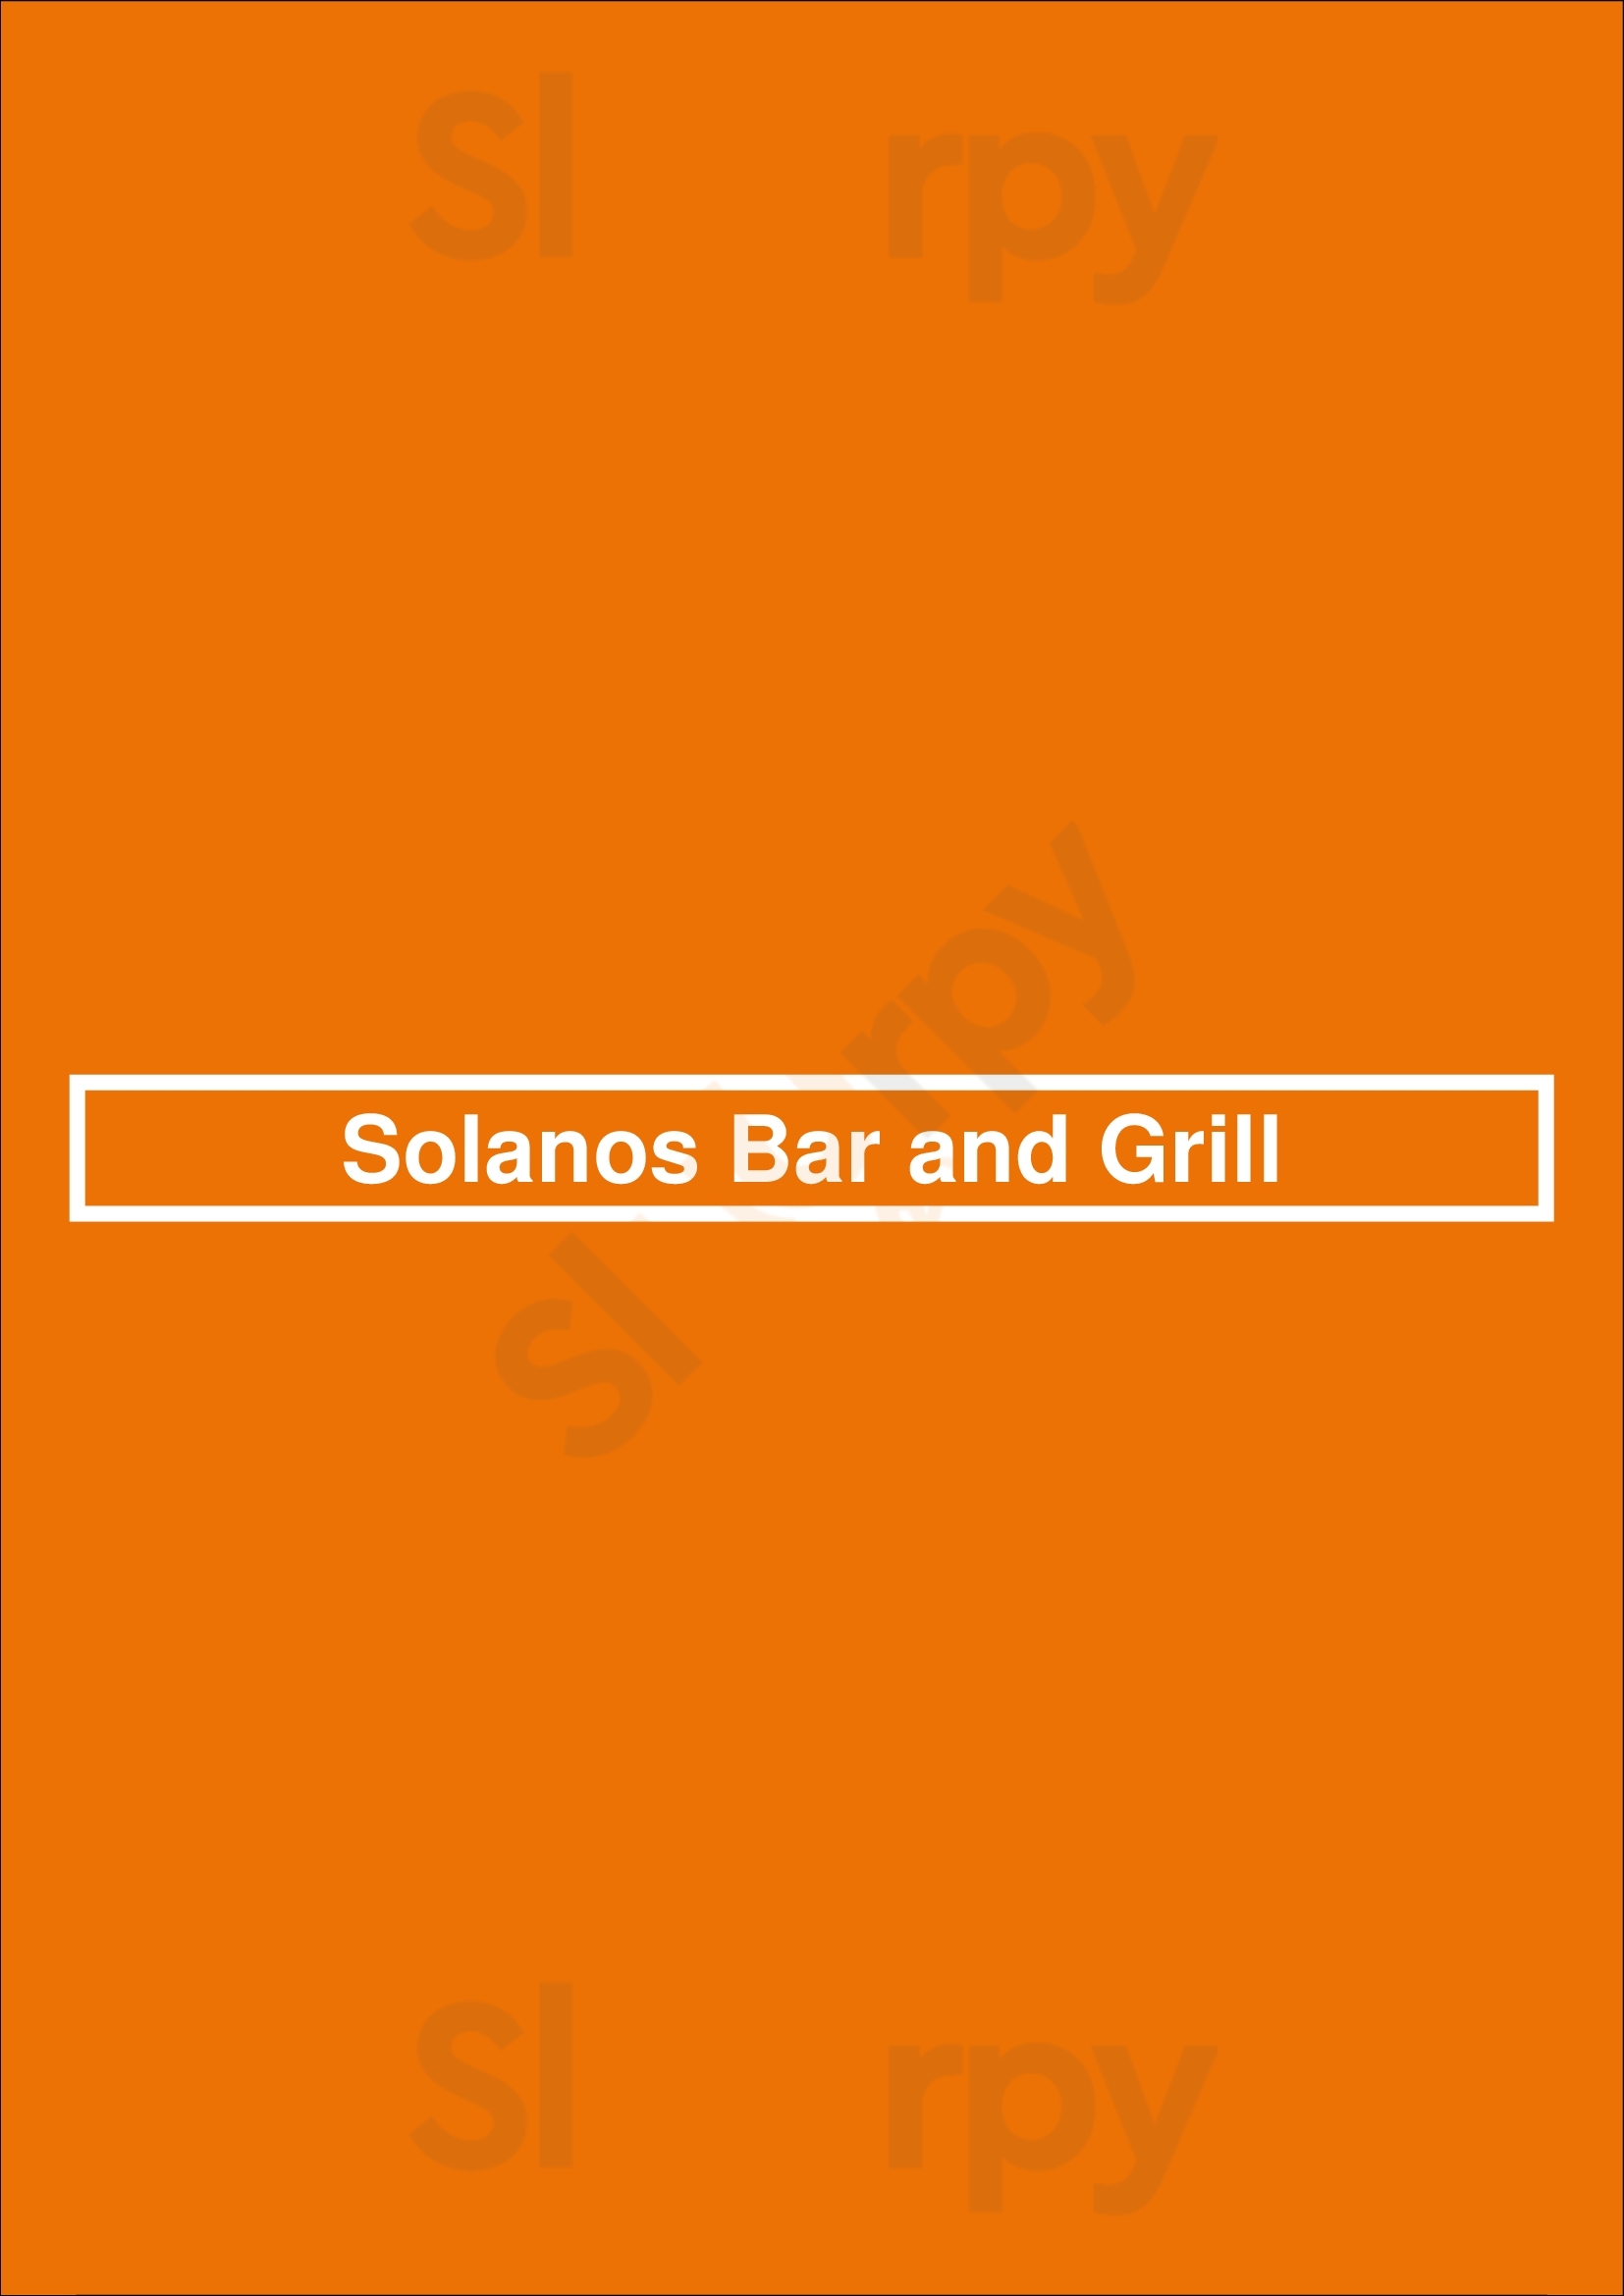 Solanos Bar And Grill Palm Desert Menu - 1